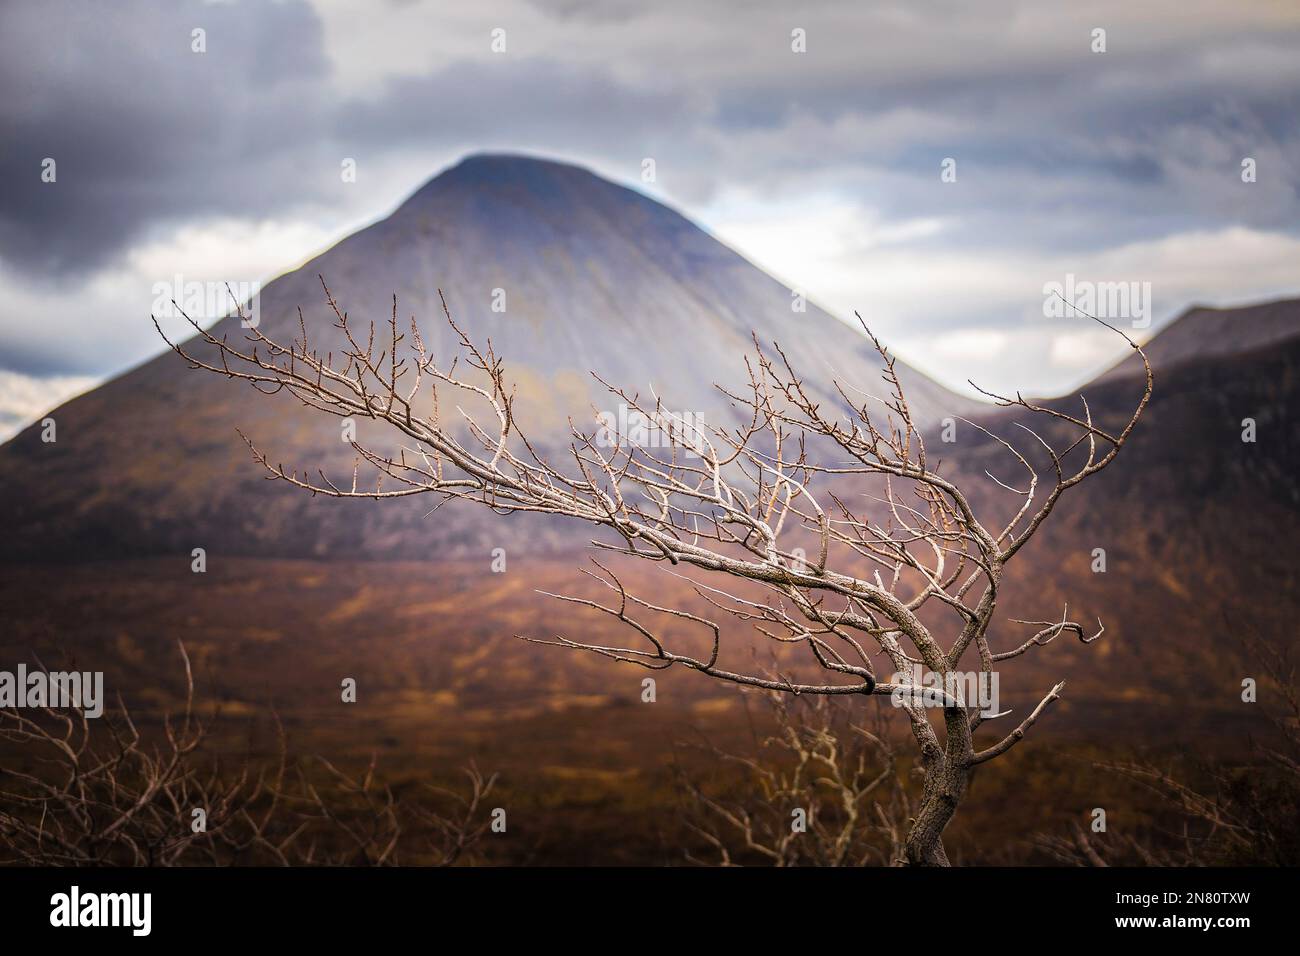 Île de Skye, Écosse - arbre Lonely sur l'île de Skye avec la montagne floue Glamanig à l'arrière-plan. Journée de printemps nuageux dans le Scottish Highlan Banque D'Images